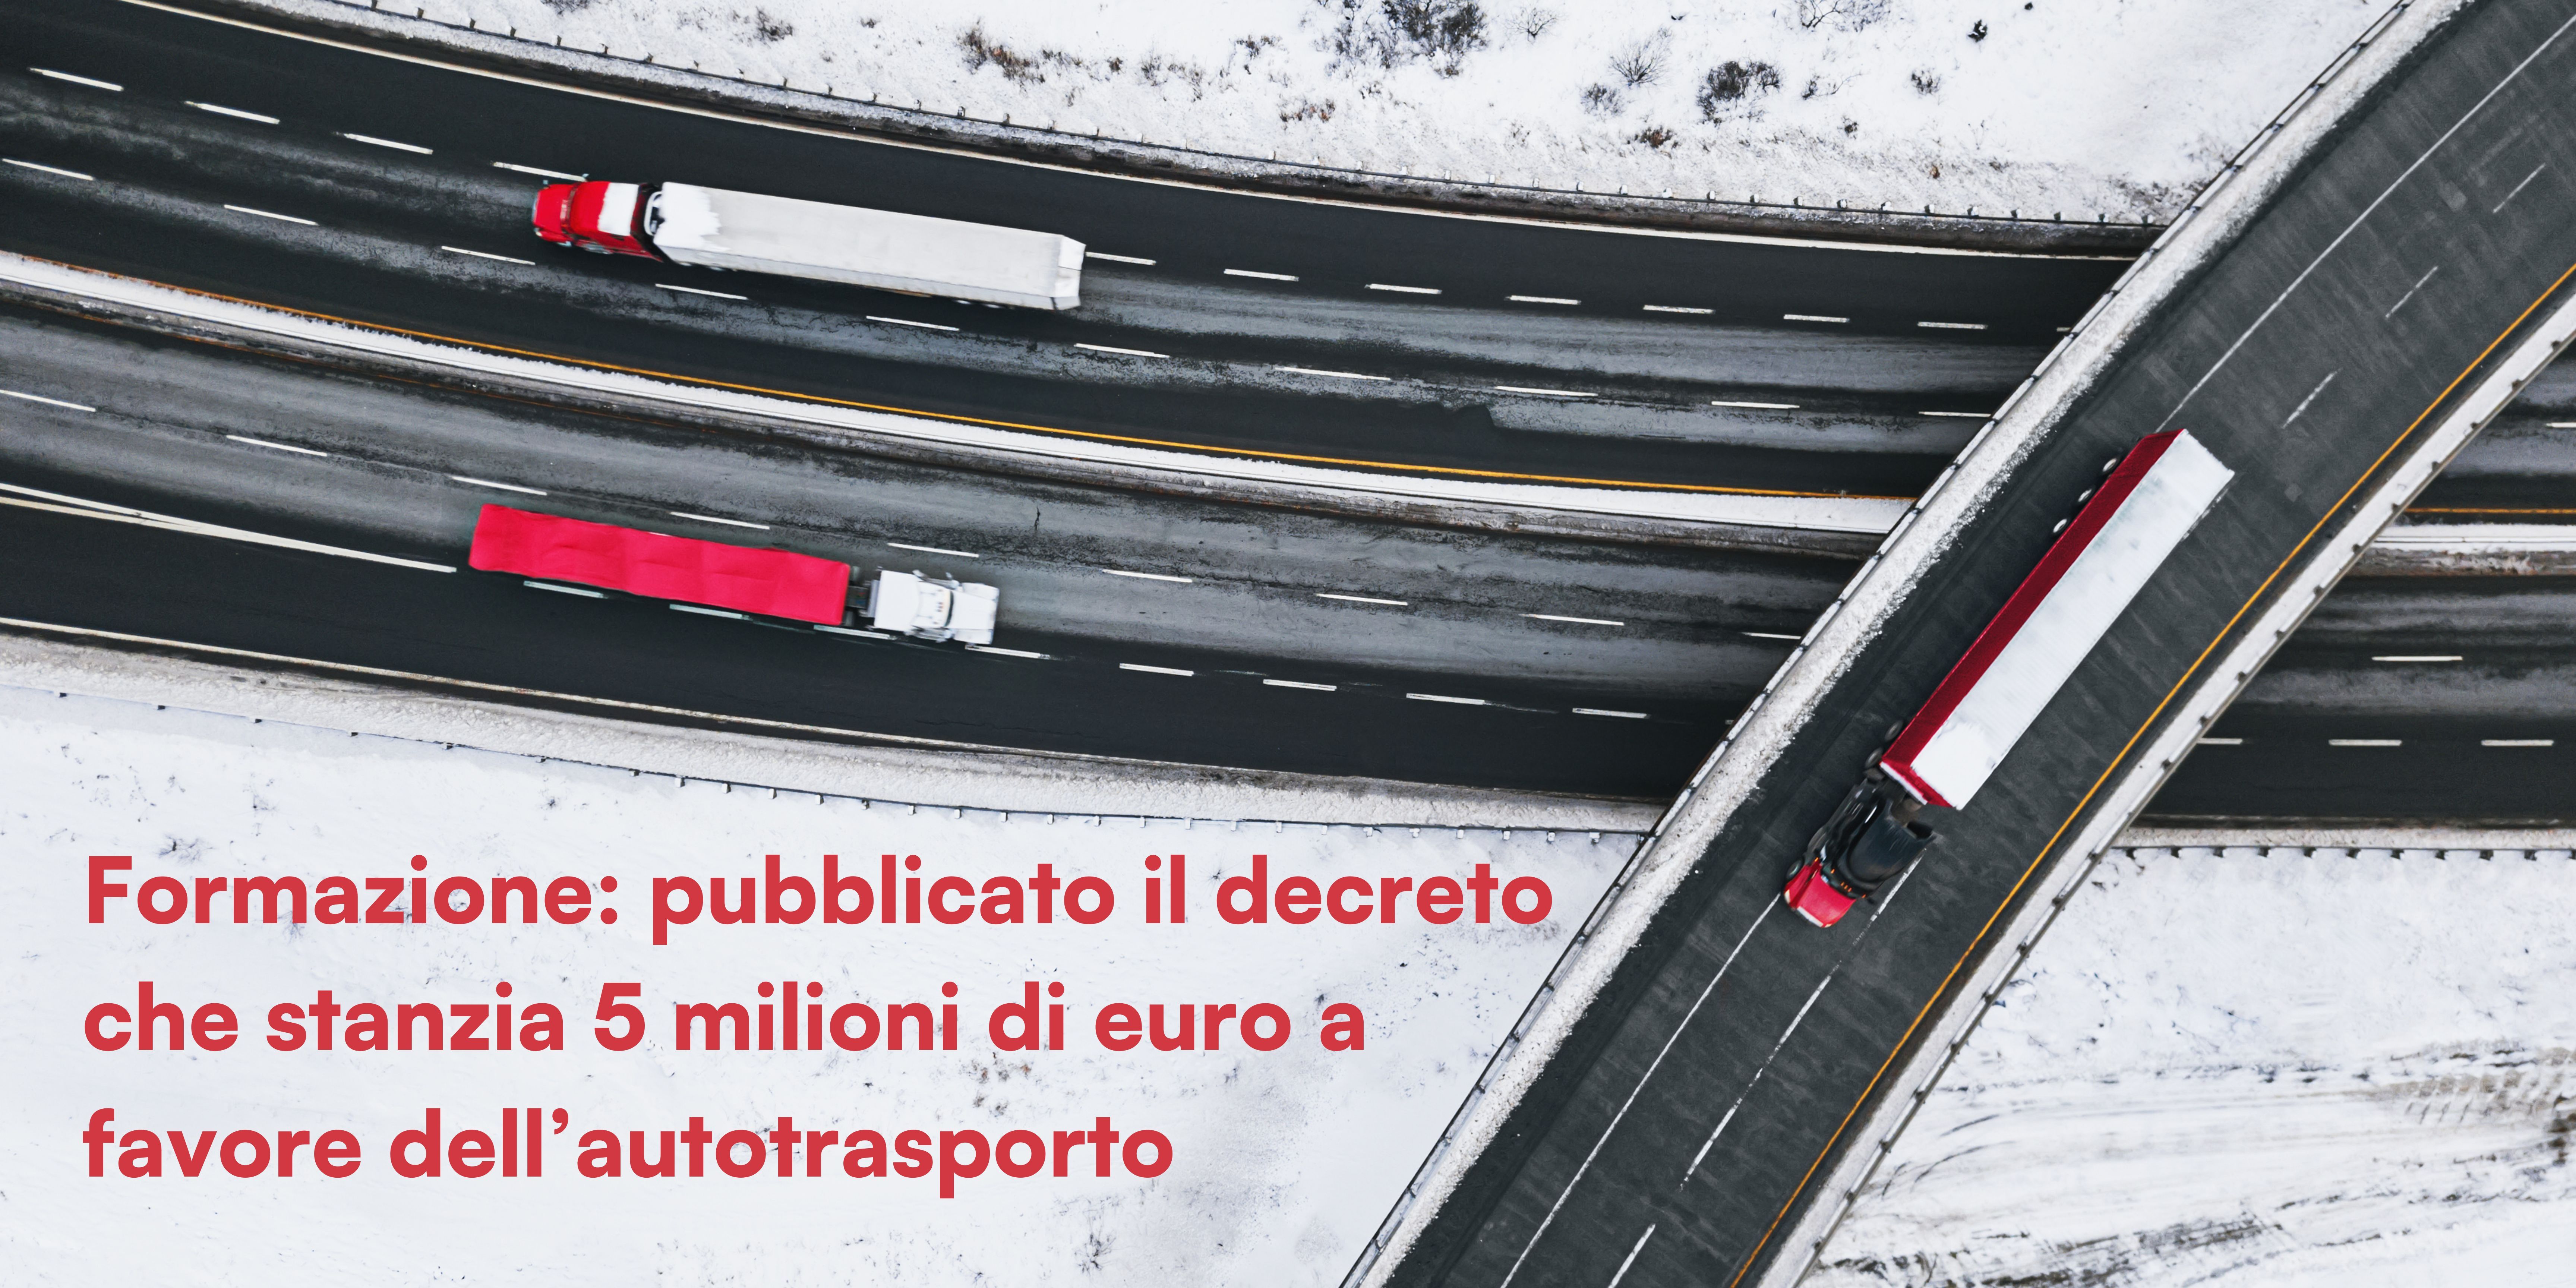 Formazione: pubblicato il decreto che stanzia 5 milioni di euro a favore dell’autotrasporto